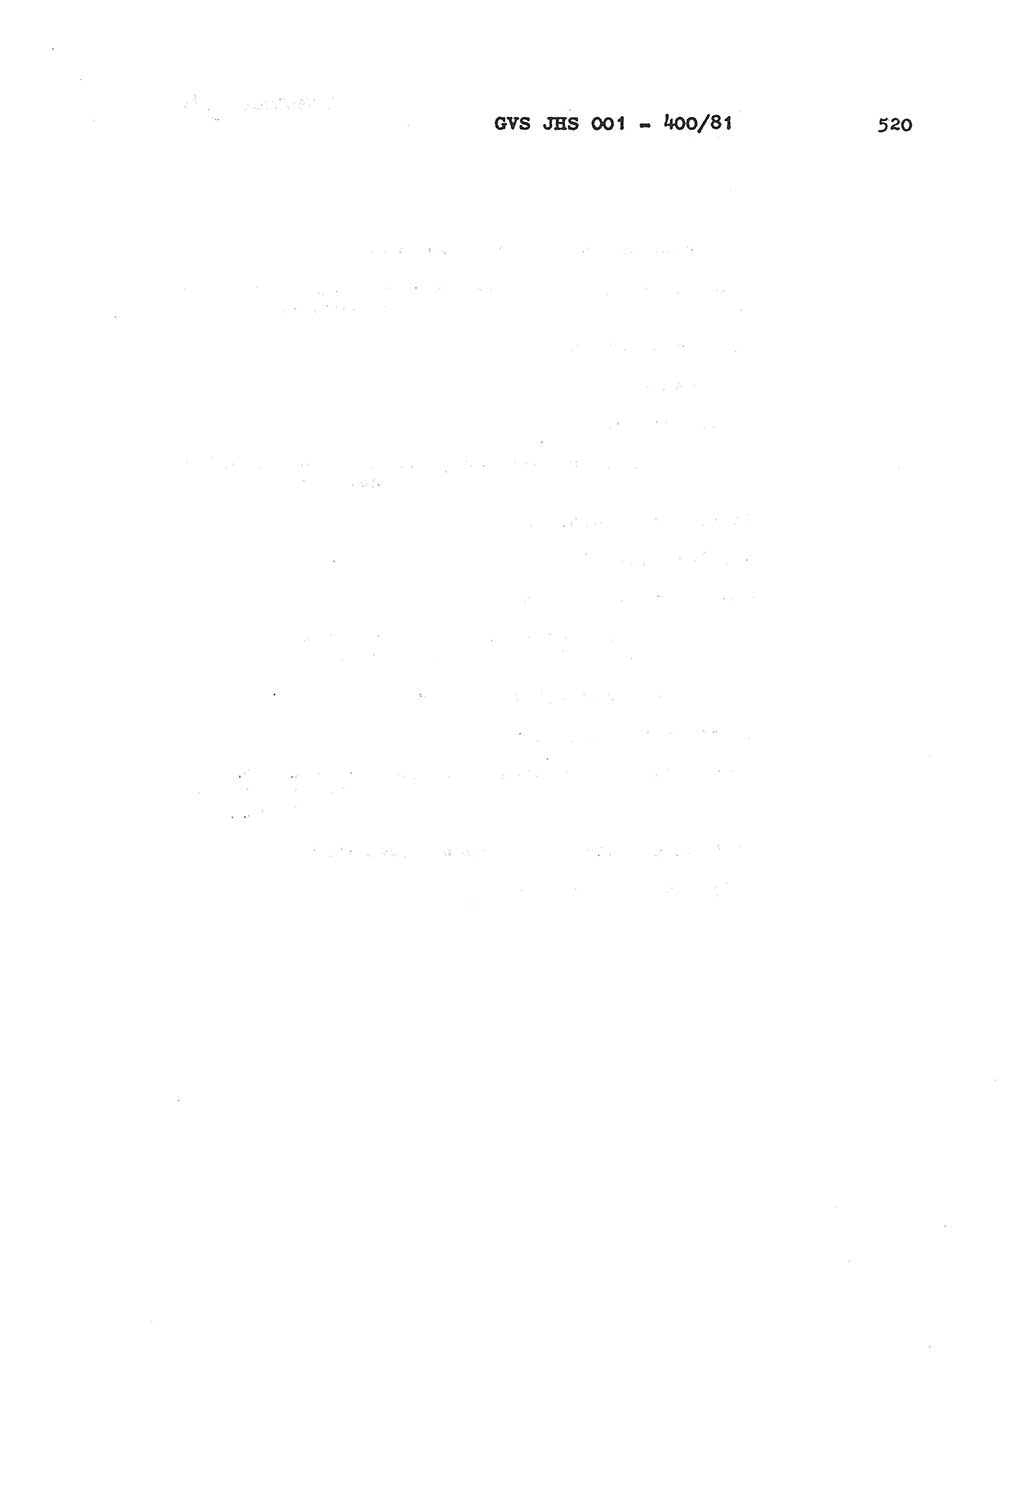 Wörterbuch der politisch-operativen Arbeit, Ministerium für Staatssicherheit (MfS) [Deutsche Demokratische Republik (DDR)], Juristische Hochschule (JHS), Geheime Verschlußsache (GVS) o001-400/81, Potsdam 1985, Blatt 520 (Wb. pol.-op. Arb. MfS DDR JHS GVS o001-400/81 1985, Bl. 520)